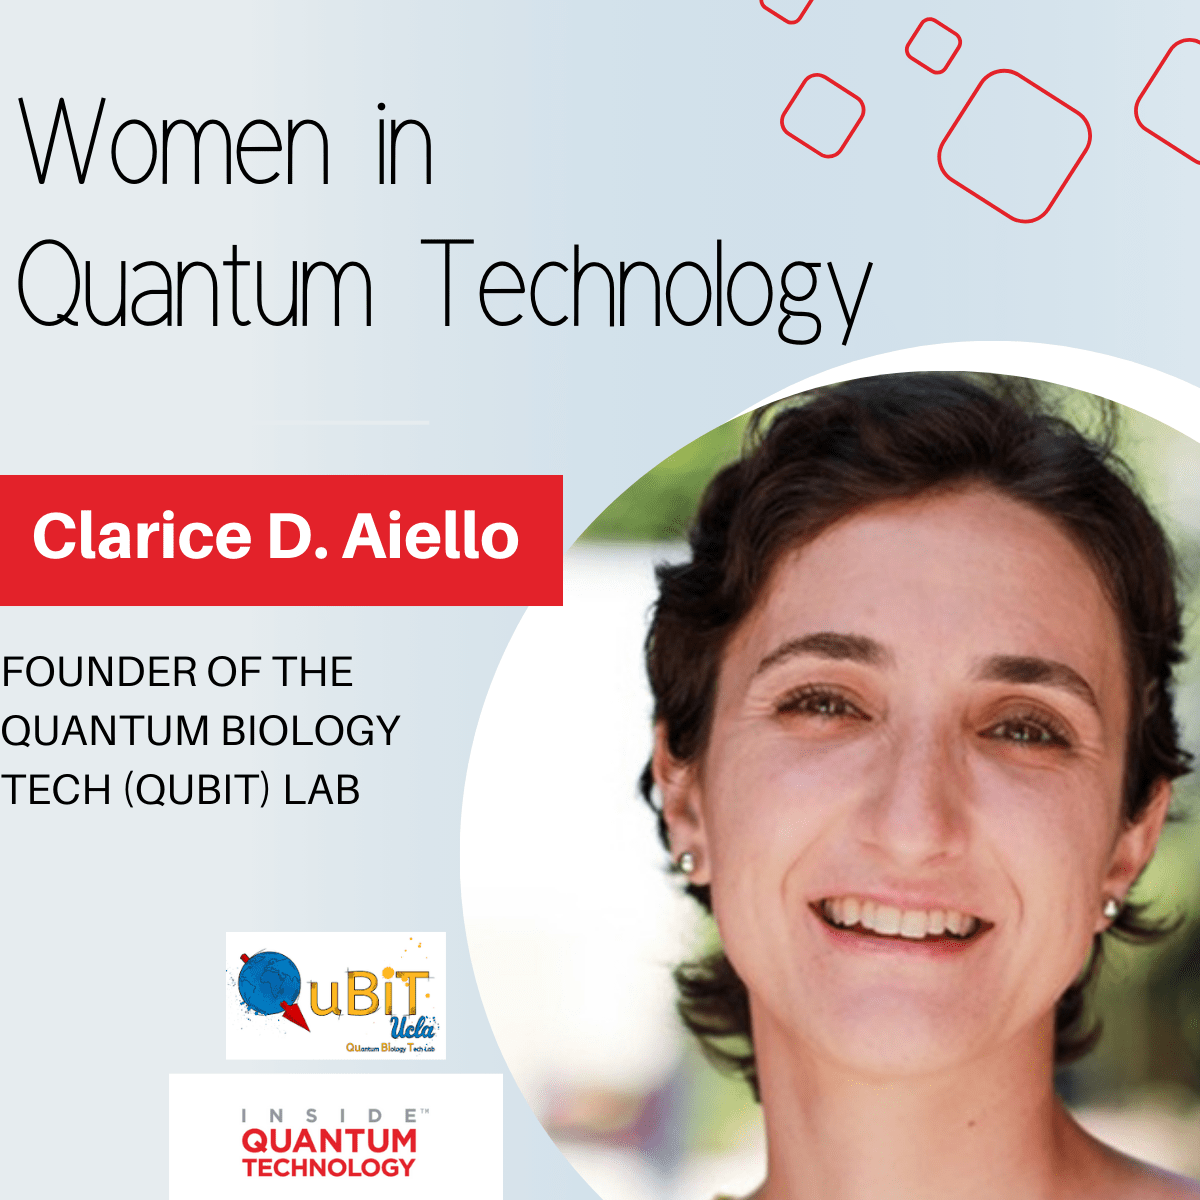 ד"ר Clarice D. Aiello, מייסדת מעבדת QuBiT, מדברת על המסע שלה לתוך המערכת האקולוגית הקוונטית.